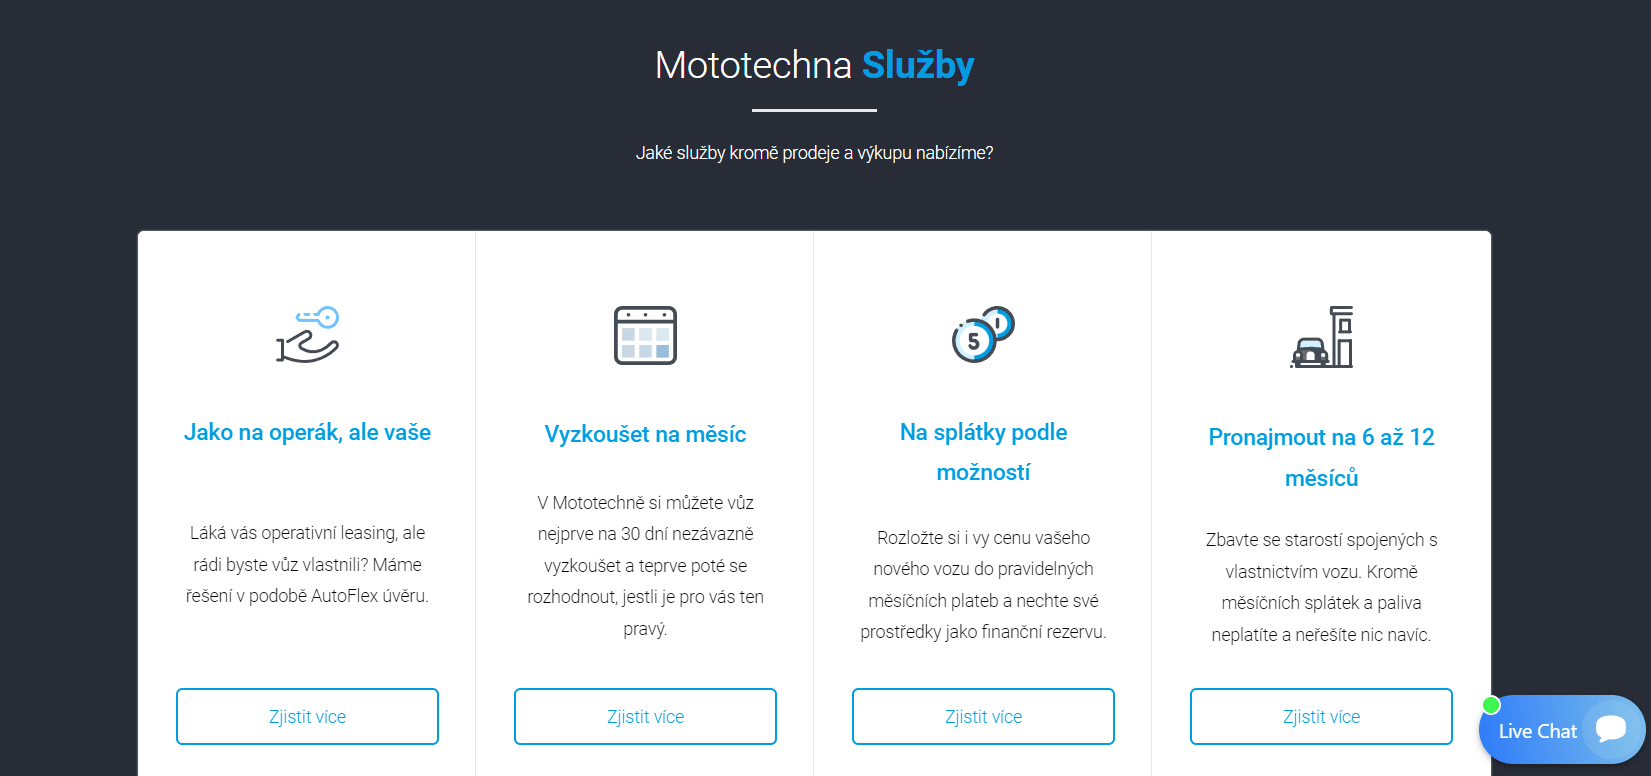 Mototechna Sluzby